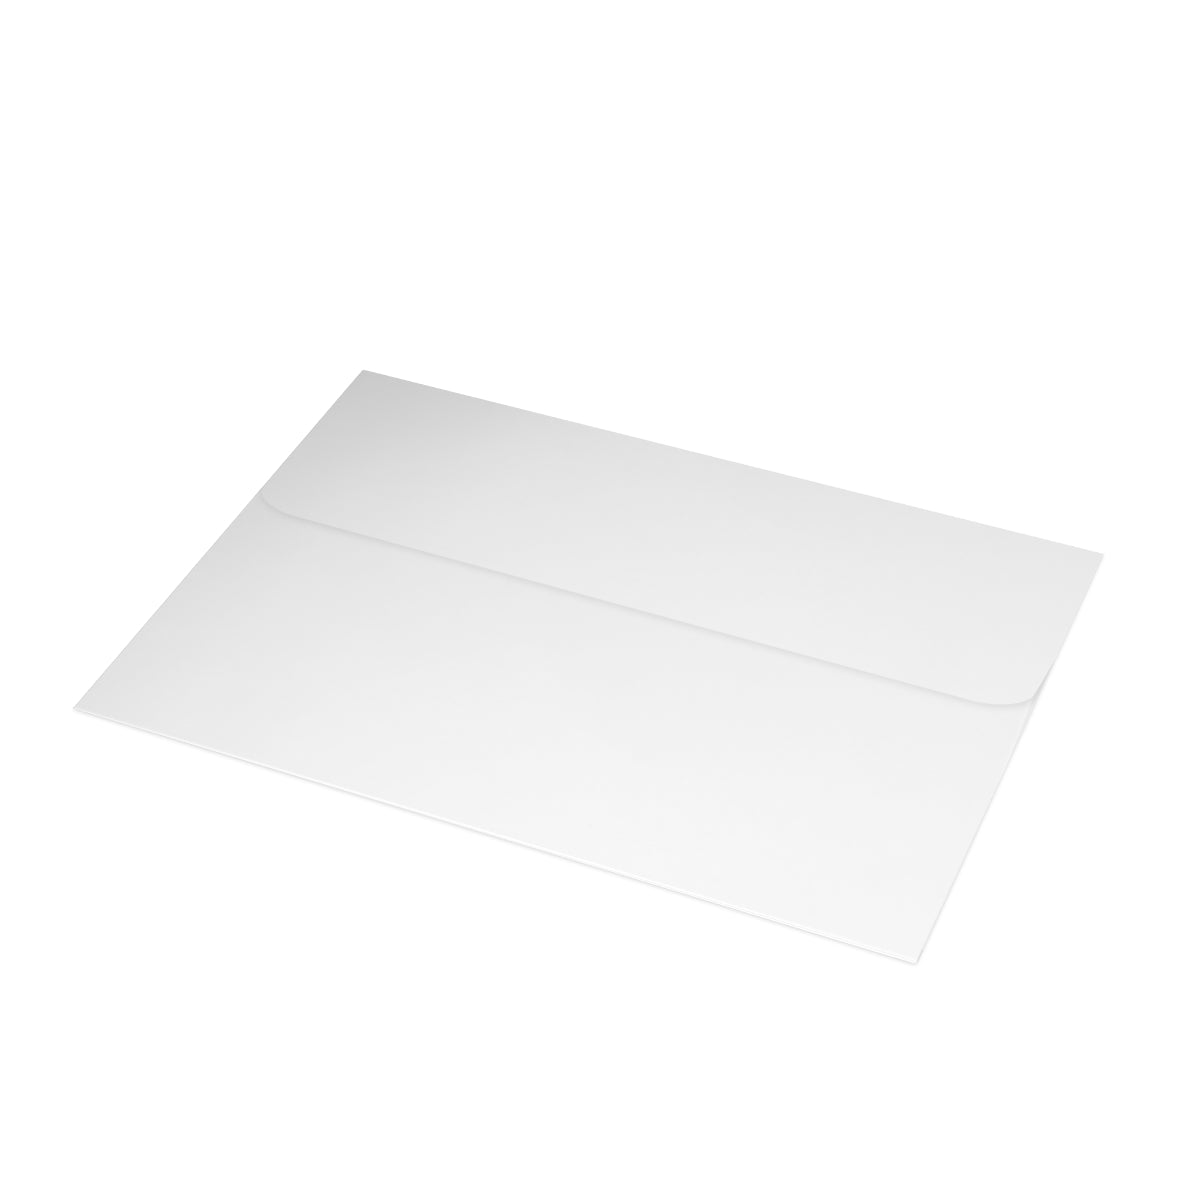 Cartes de notes mates pliées Newport + enveloppes (10 pièces) 